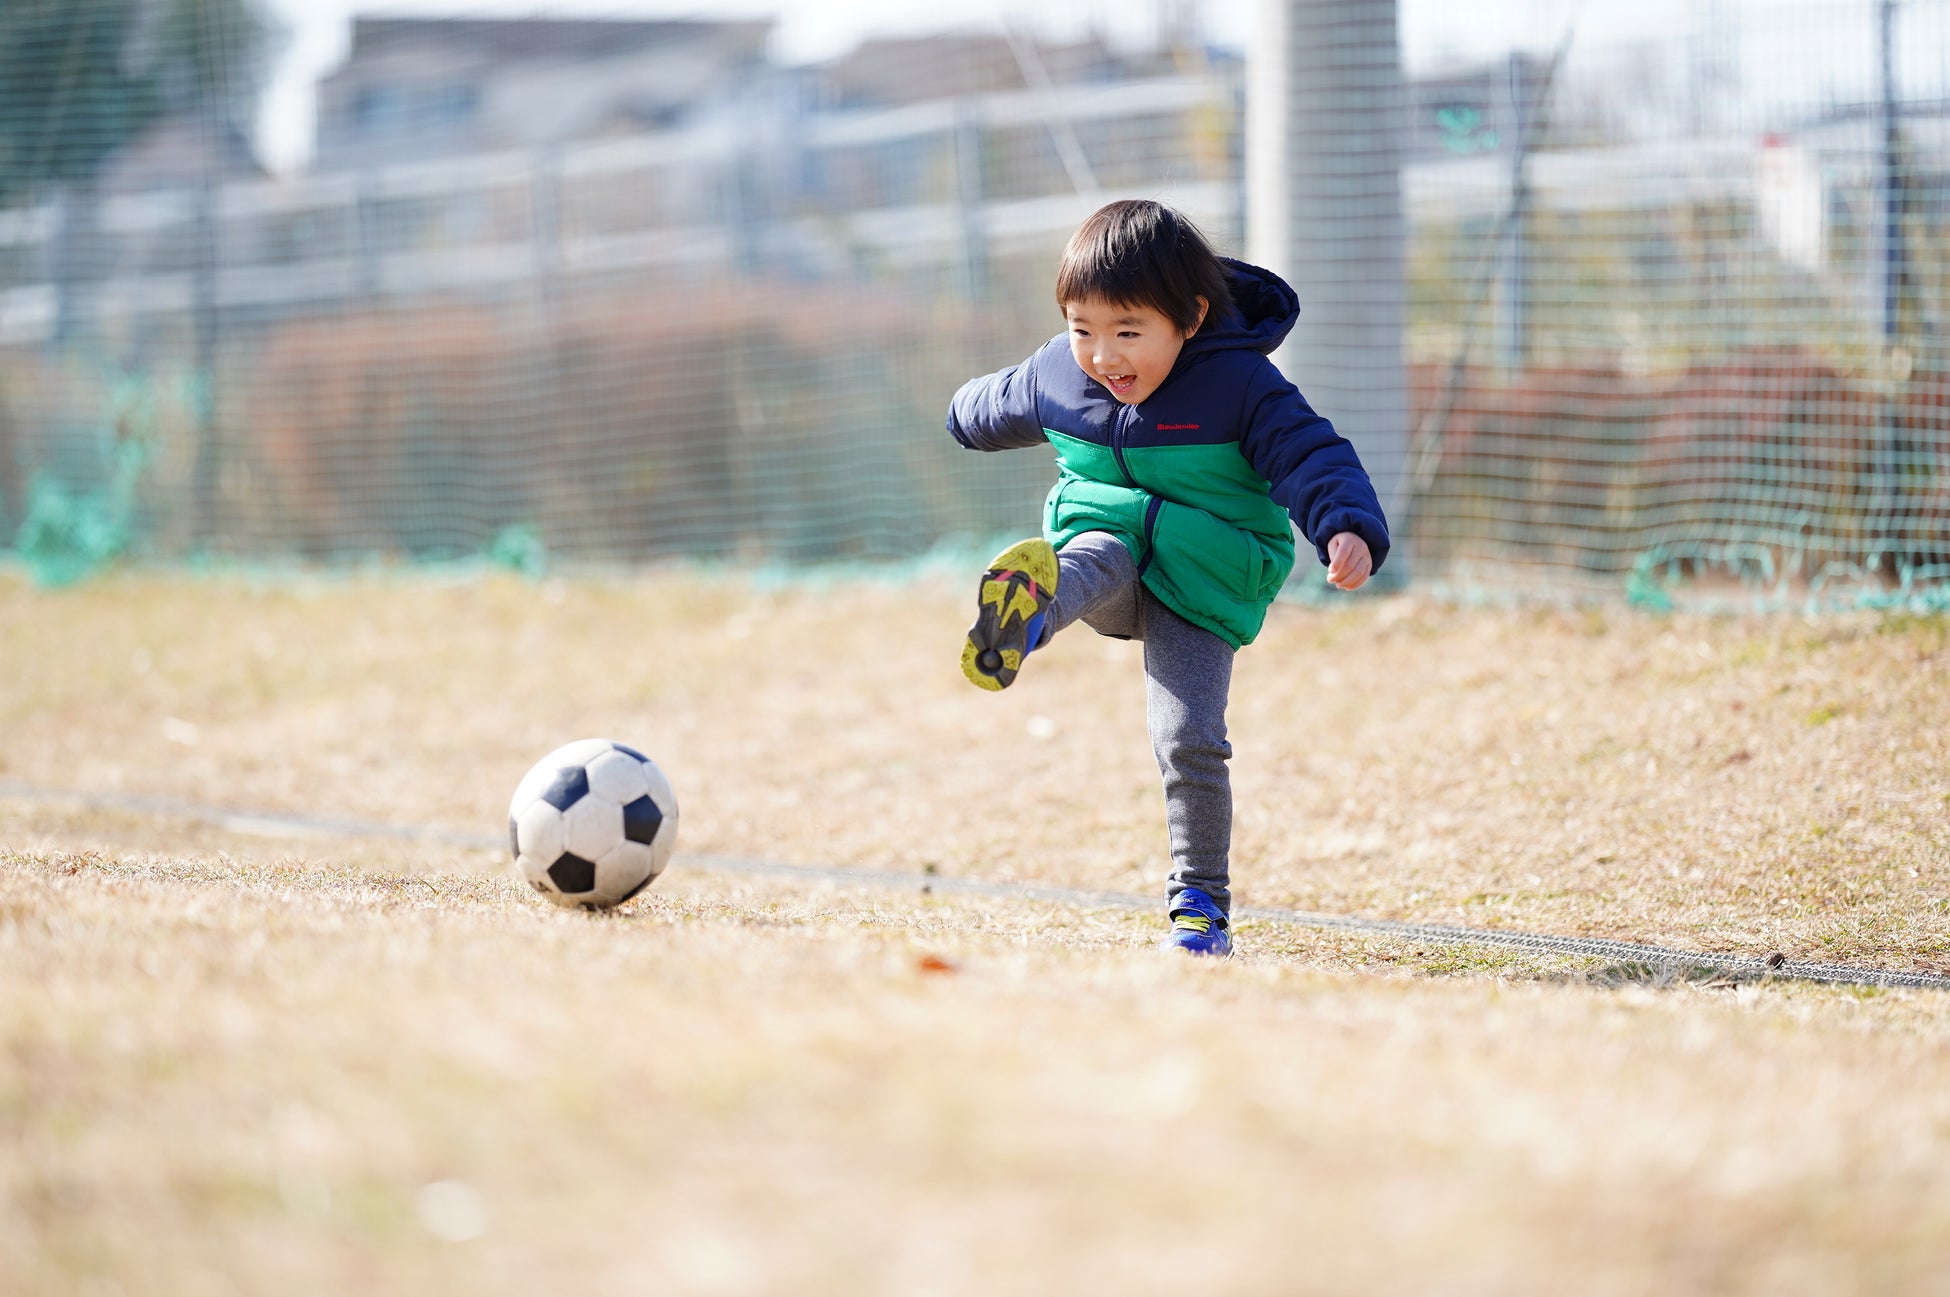 【サッカー短期教室開催】朝日町で子どもたちに人気のサッカースクールが「冬季短期サッカー教室」を開催